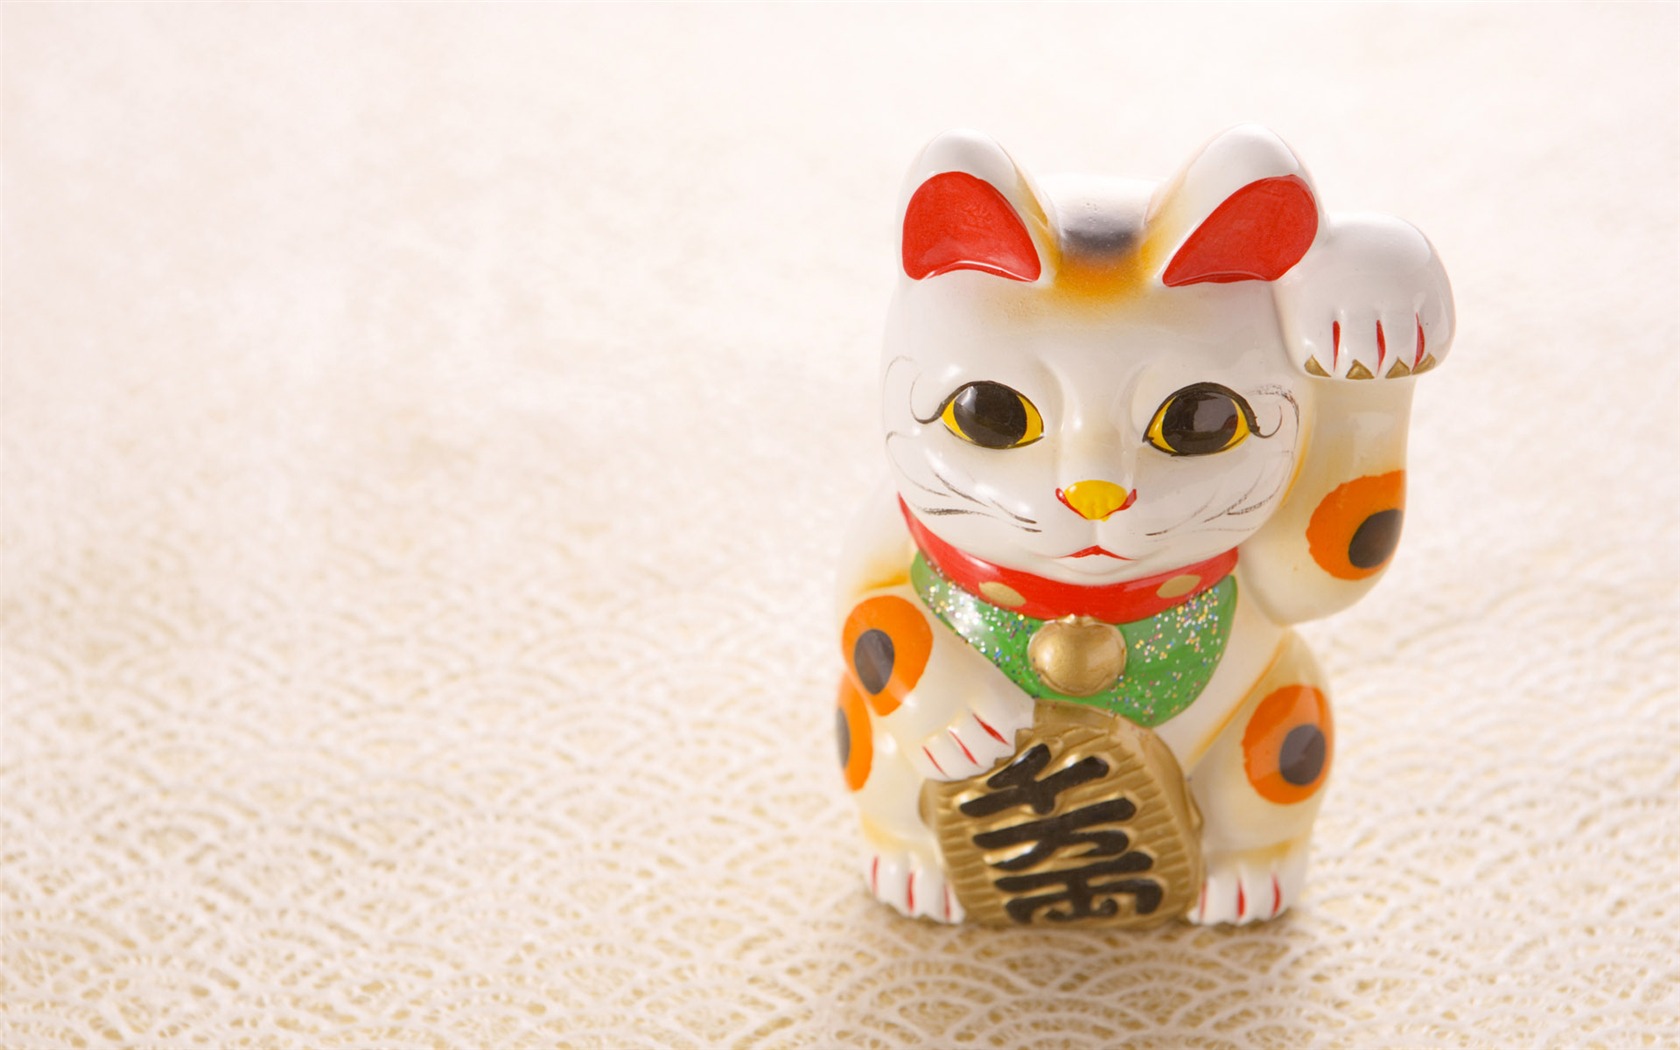 Fondos de año nuevo japonés Cultura (3) #20 - 1680x1050